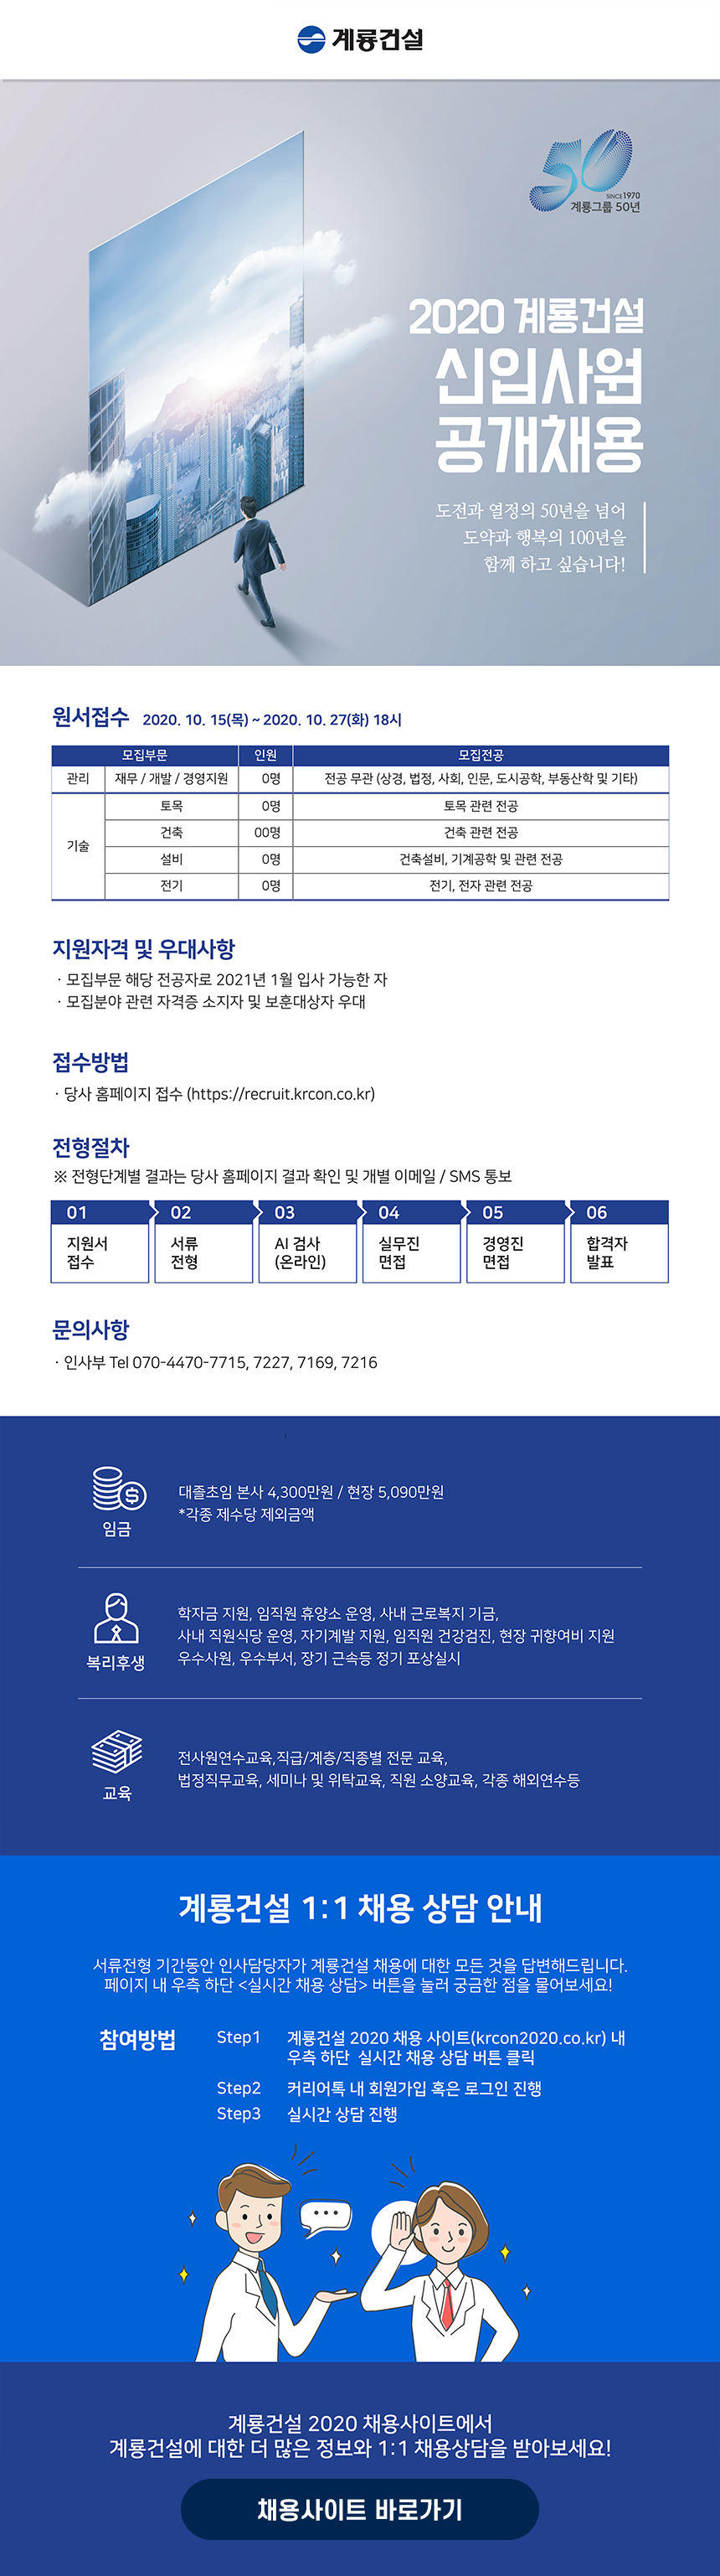 2020 계룡건설 신입사원 공개채용